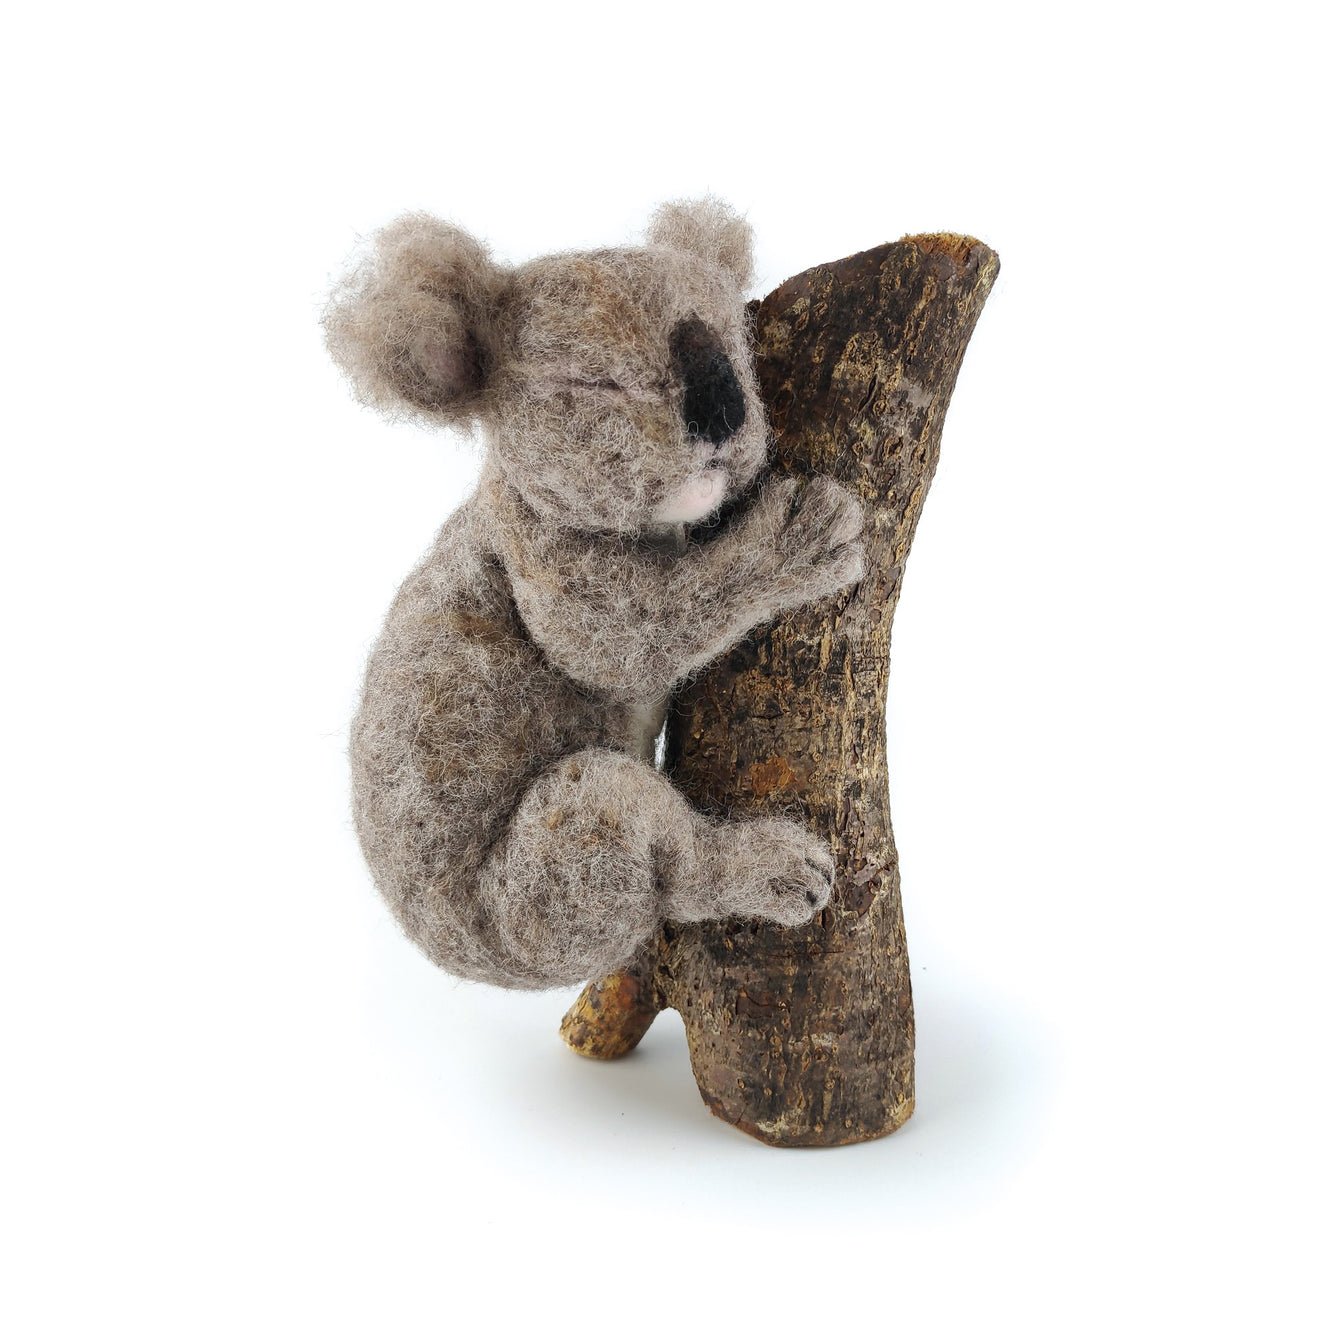 Sleepy Koala Crafty Needle Felt Kit -The Mountain Merchant -Bright Wonders